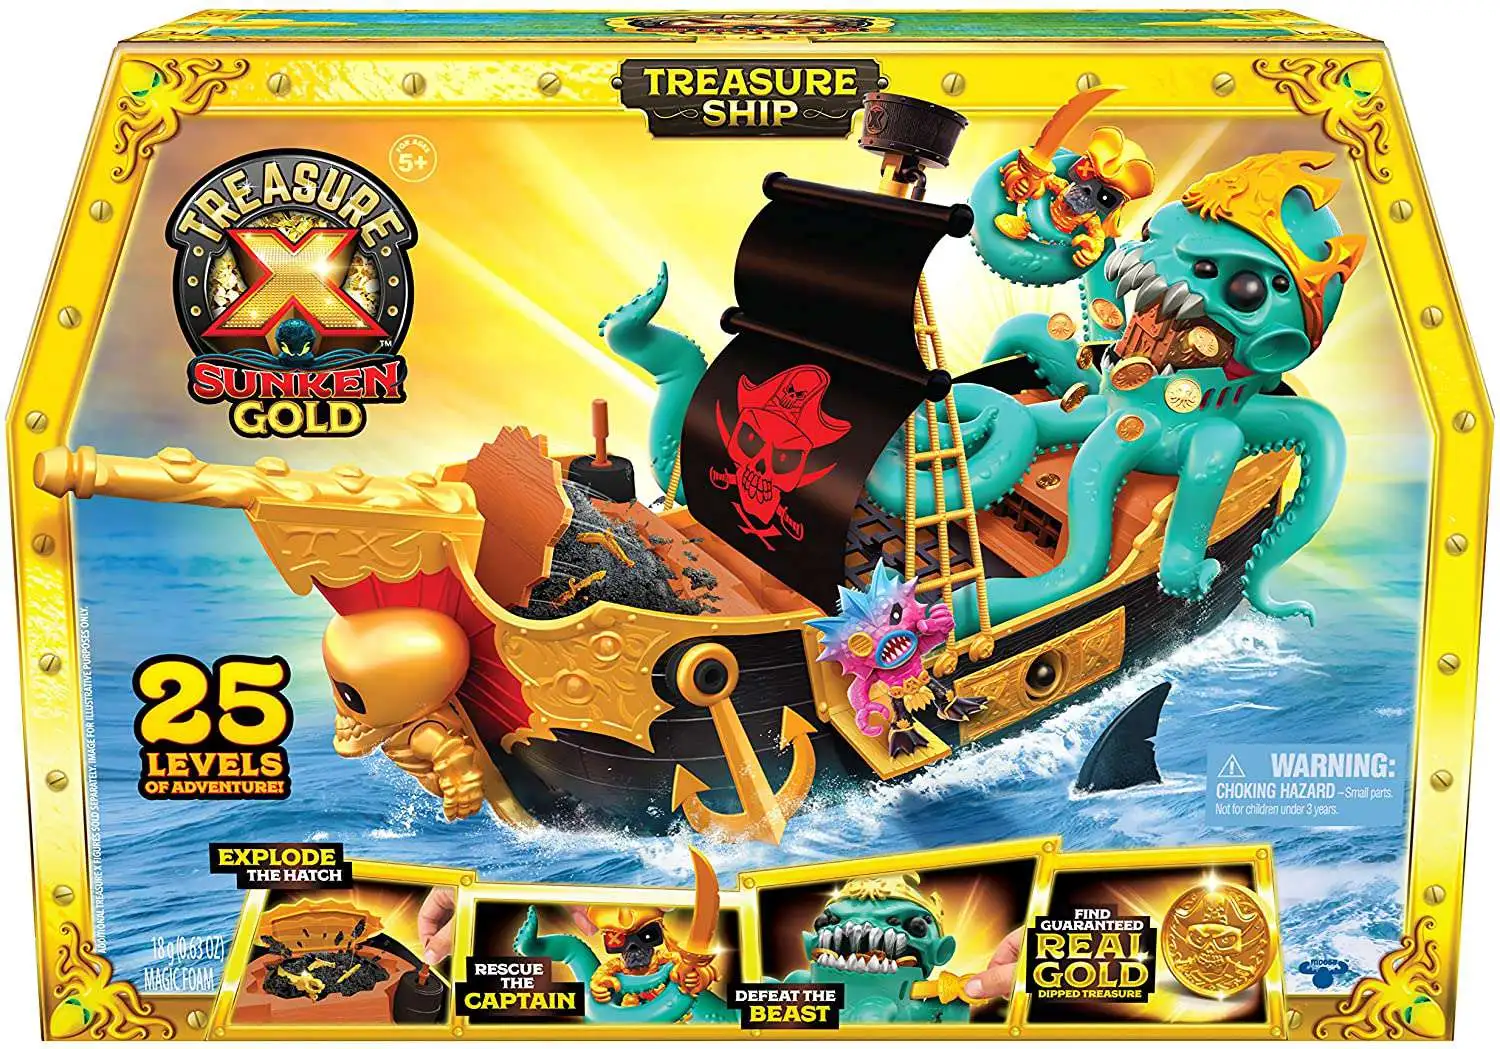 Treasure x gold. Treasure x Sunken Gold Treasure ship Pirates Toy Playset. Большой набор Treasure x "корабль c сокровищами",. Moose большой игровой набор Treasure x корабль с сокровищами 41579. Корабль Трежер Икс пиратский.